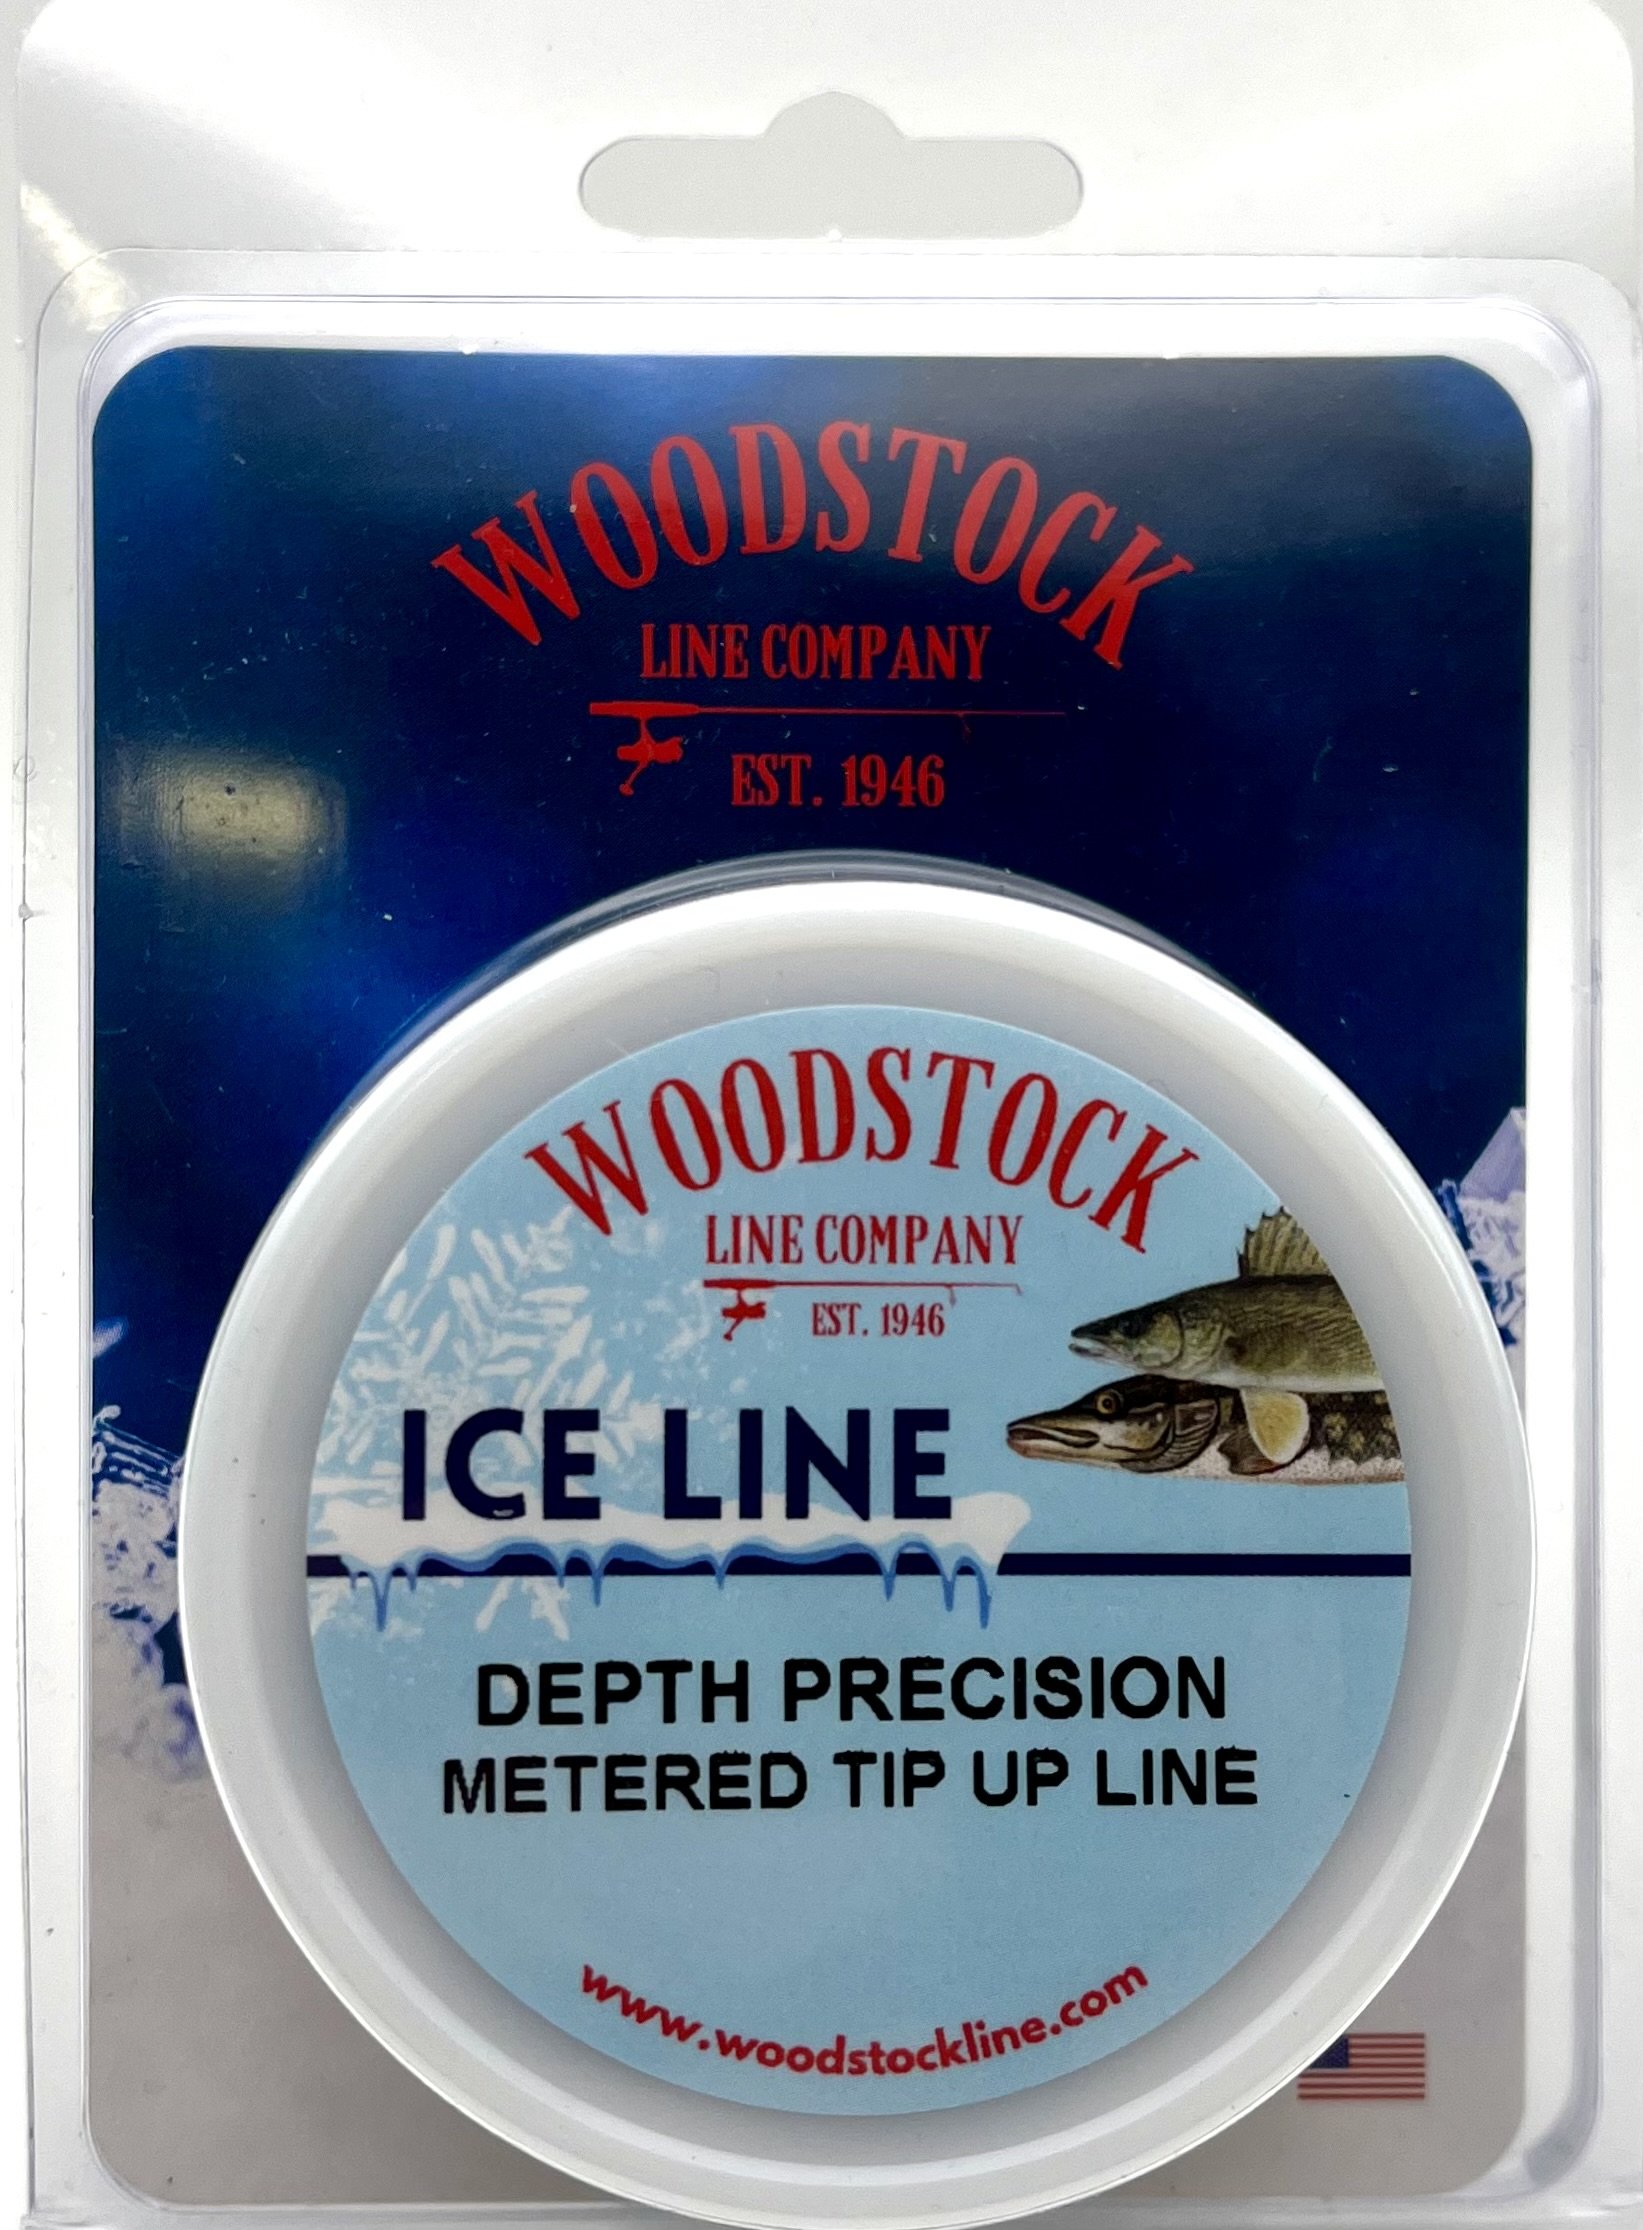 Depth Precision Metered Tip Up Line — Woodstock Line